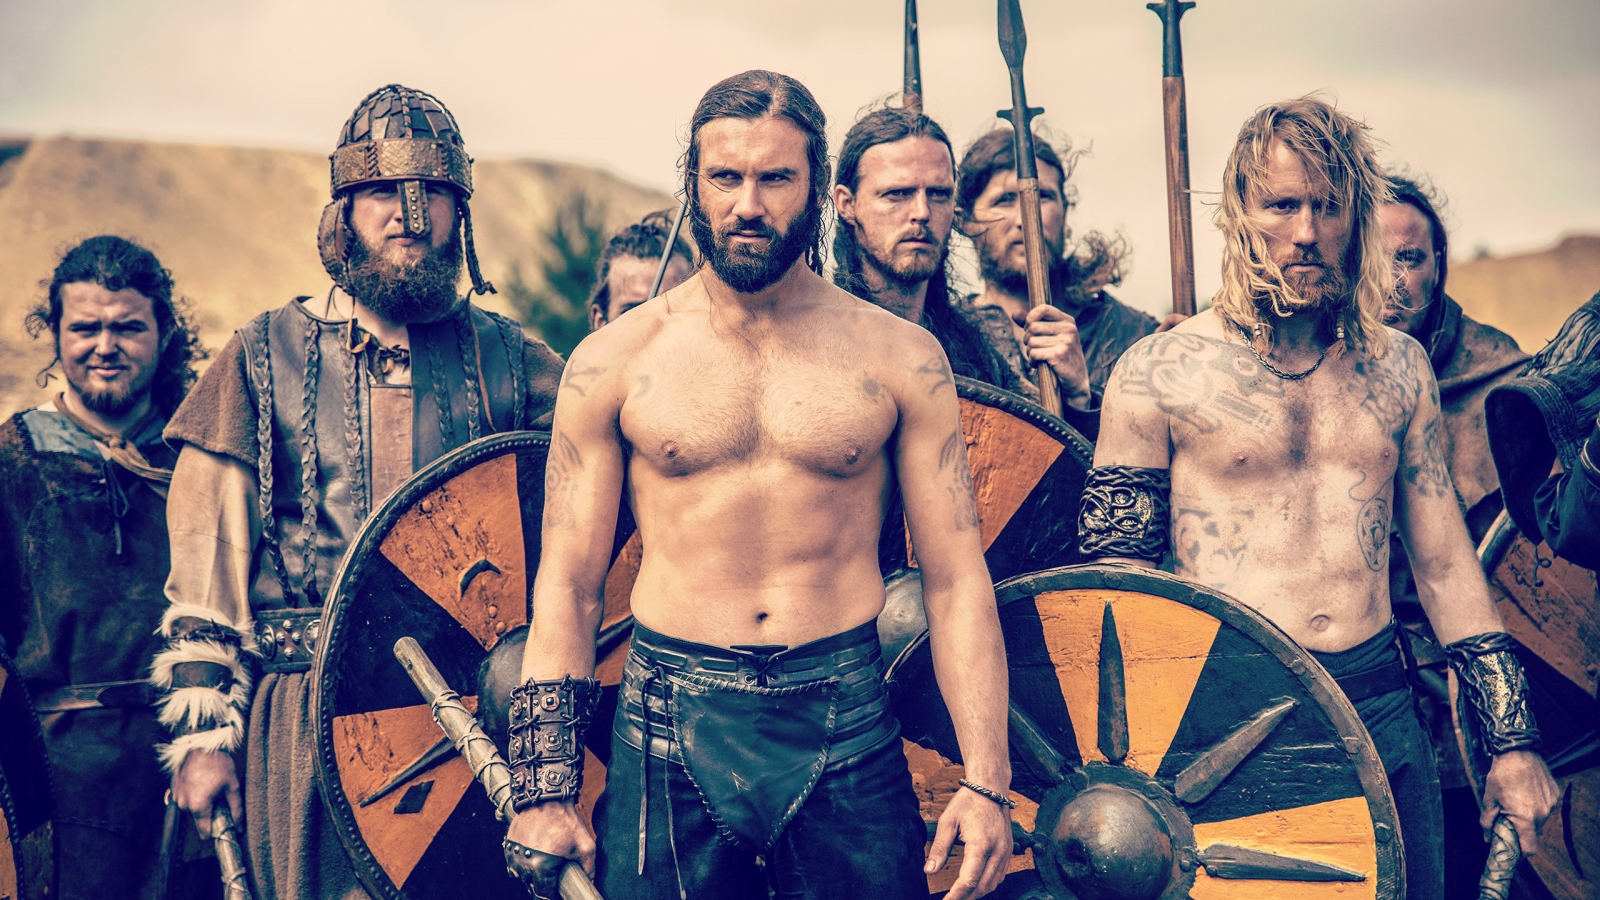 Vikings Season 2 Scene for 1600 x 900 HDTV resolution